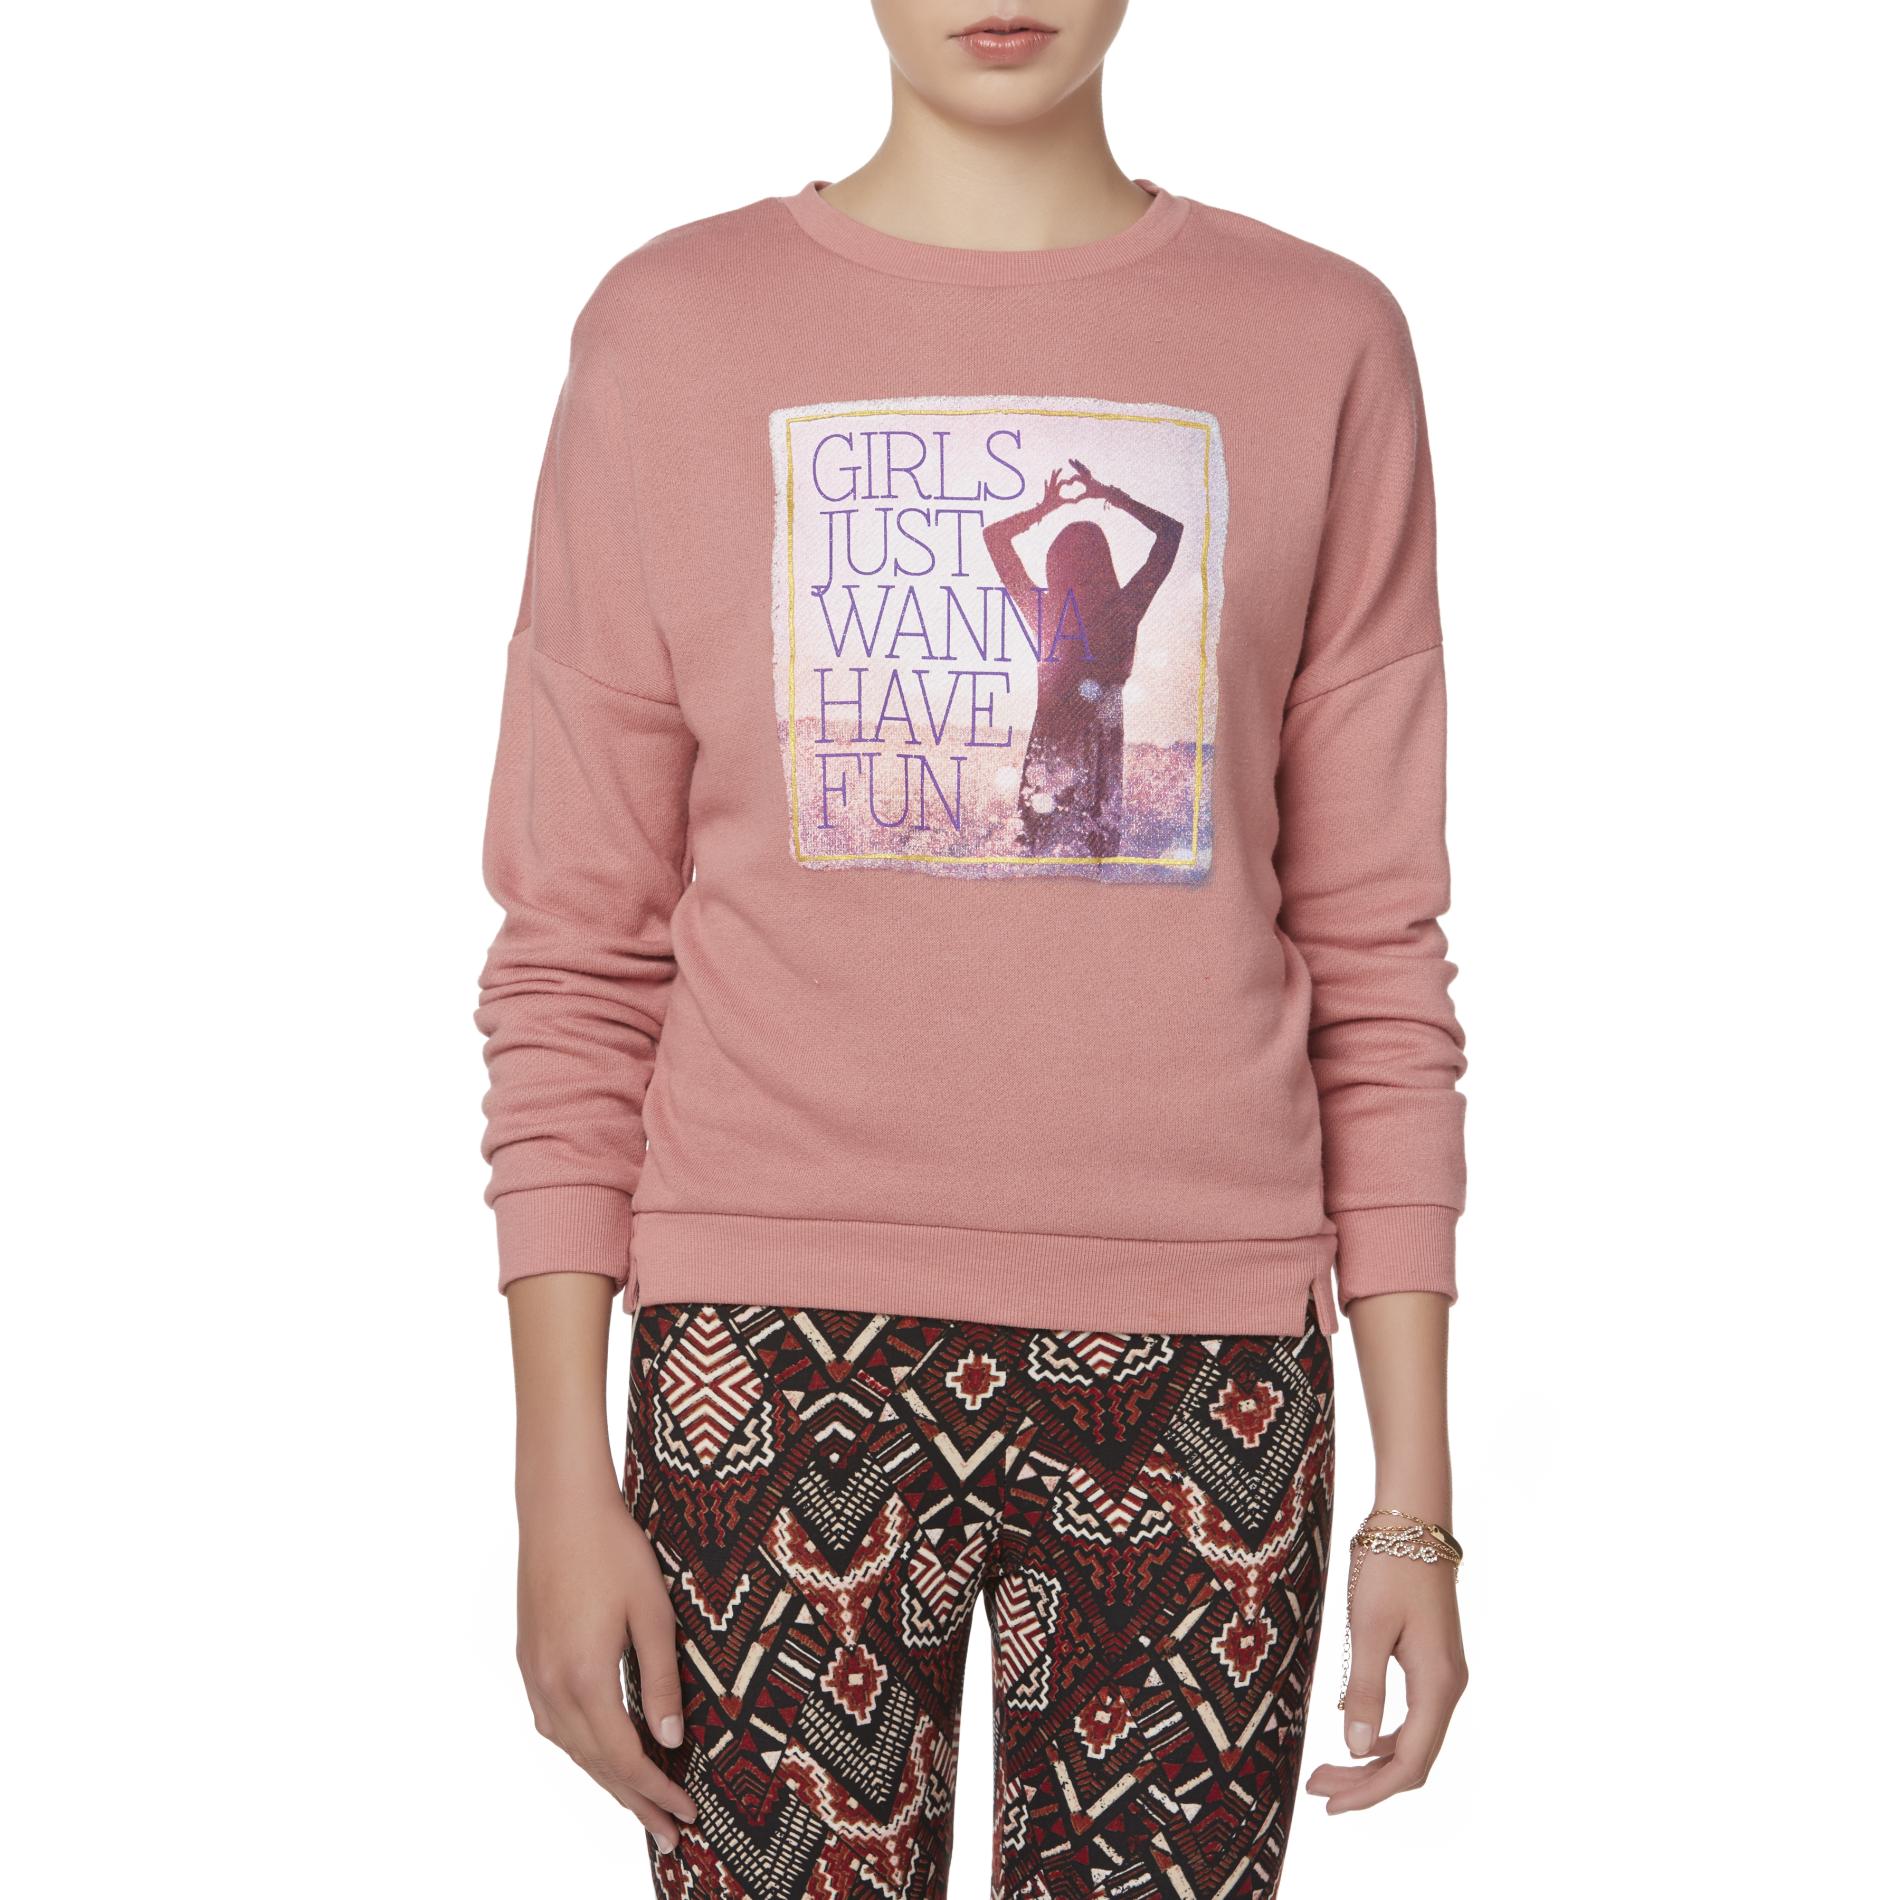 Bongo Juniors' Graphic Sweatshirt - Girls Just Wanna Have Fun